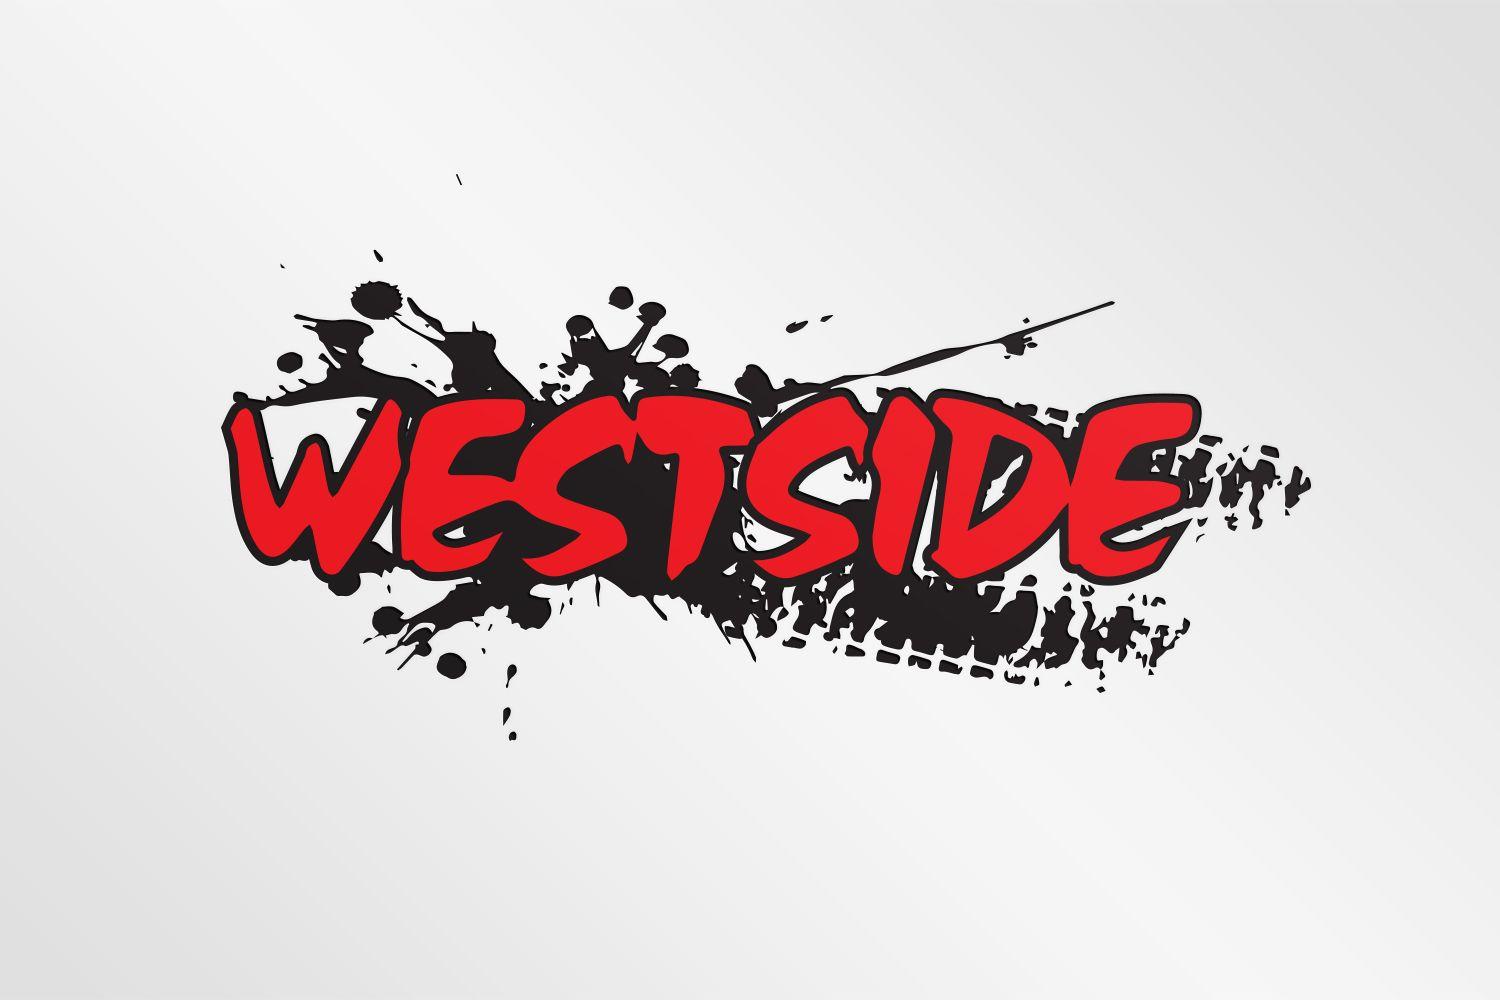 Westside Logo - Bold, Serious, Motorcycle Part Logo Design for Westside or Westside